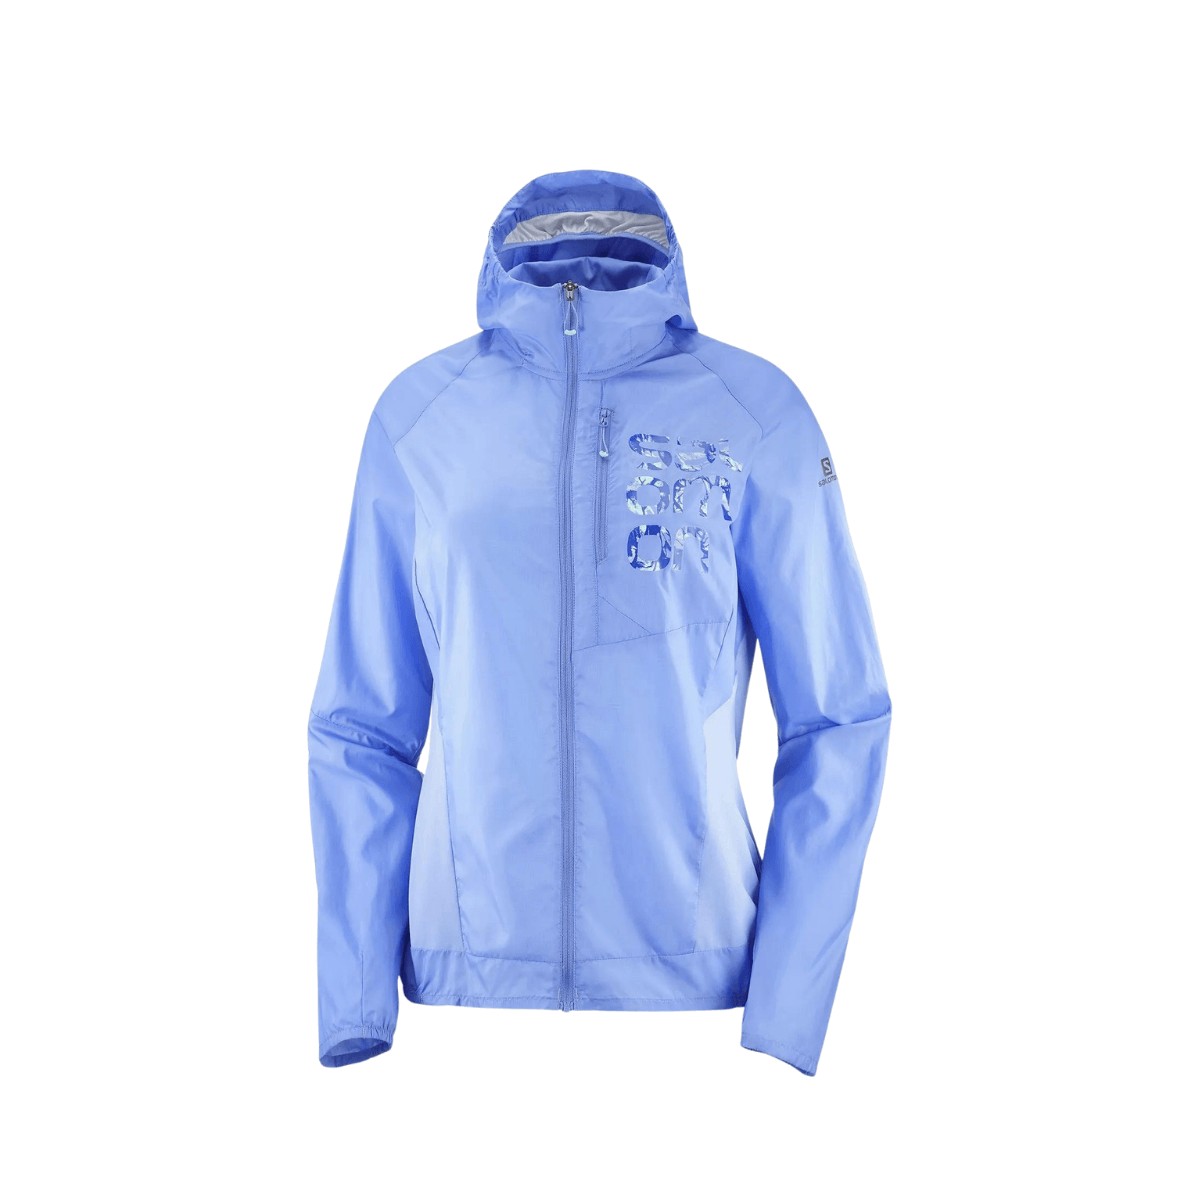 Salomon Cross Bonatti Wind Women's Jacket Blue, Size S